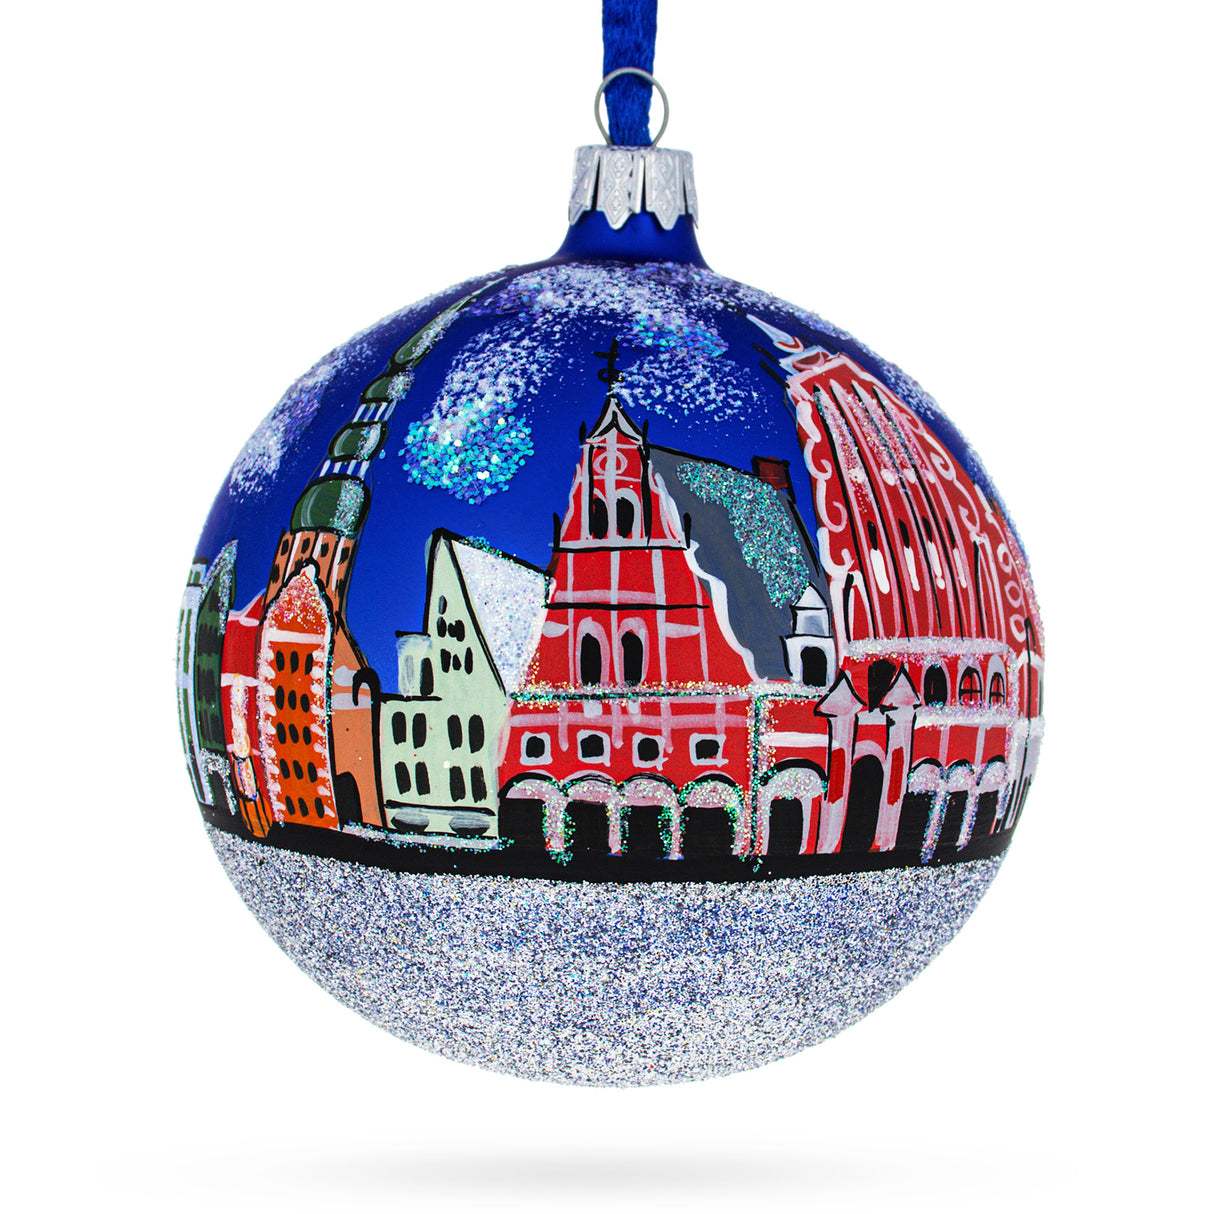 Old City Riga (Vecriga), Riga, Latvia Glass Ball Christmas Ornament 4 Inches in Multi color, Round shape